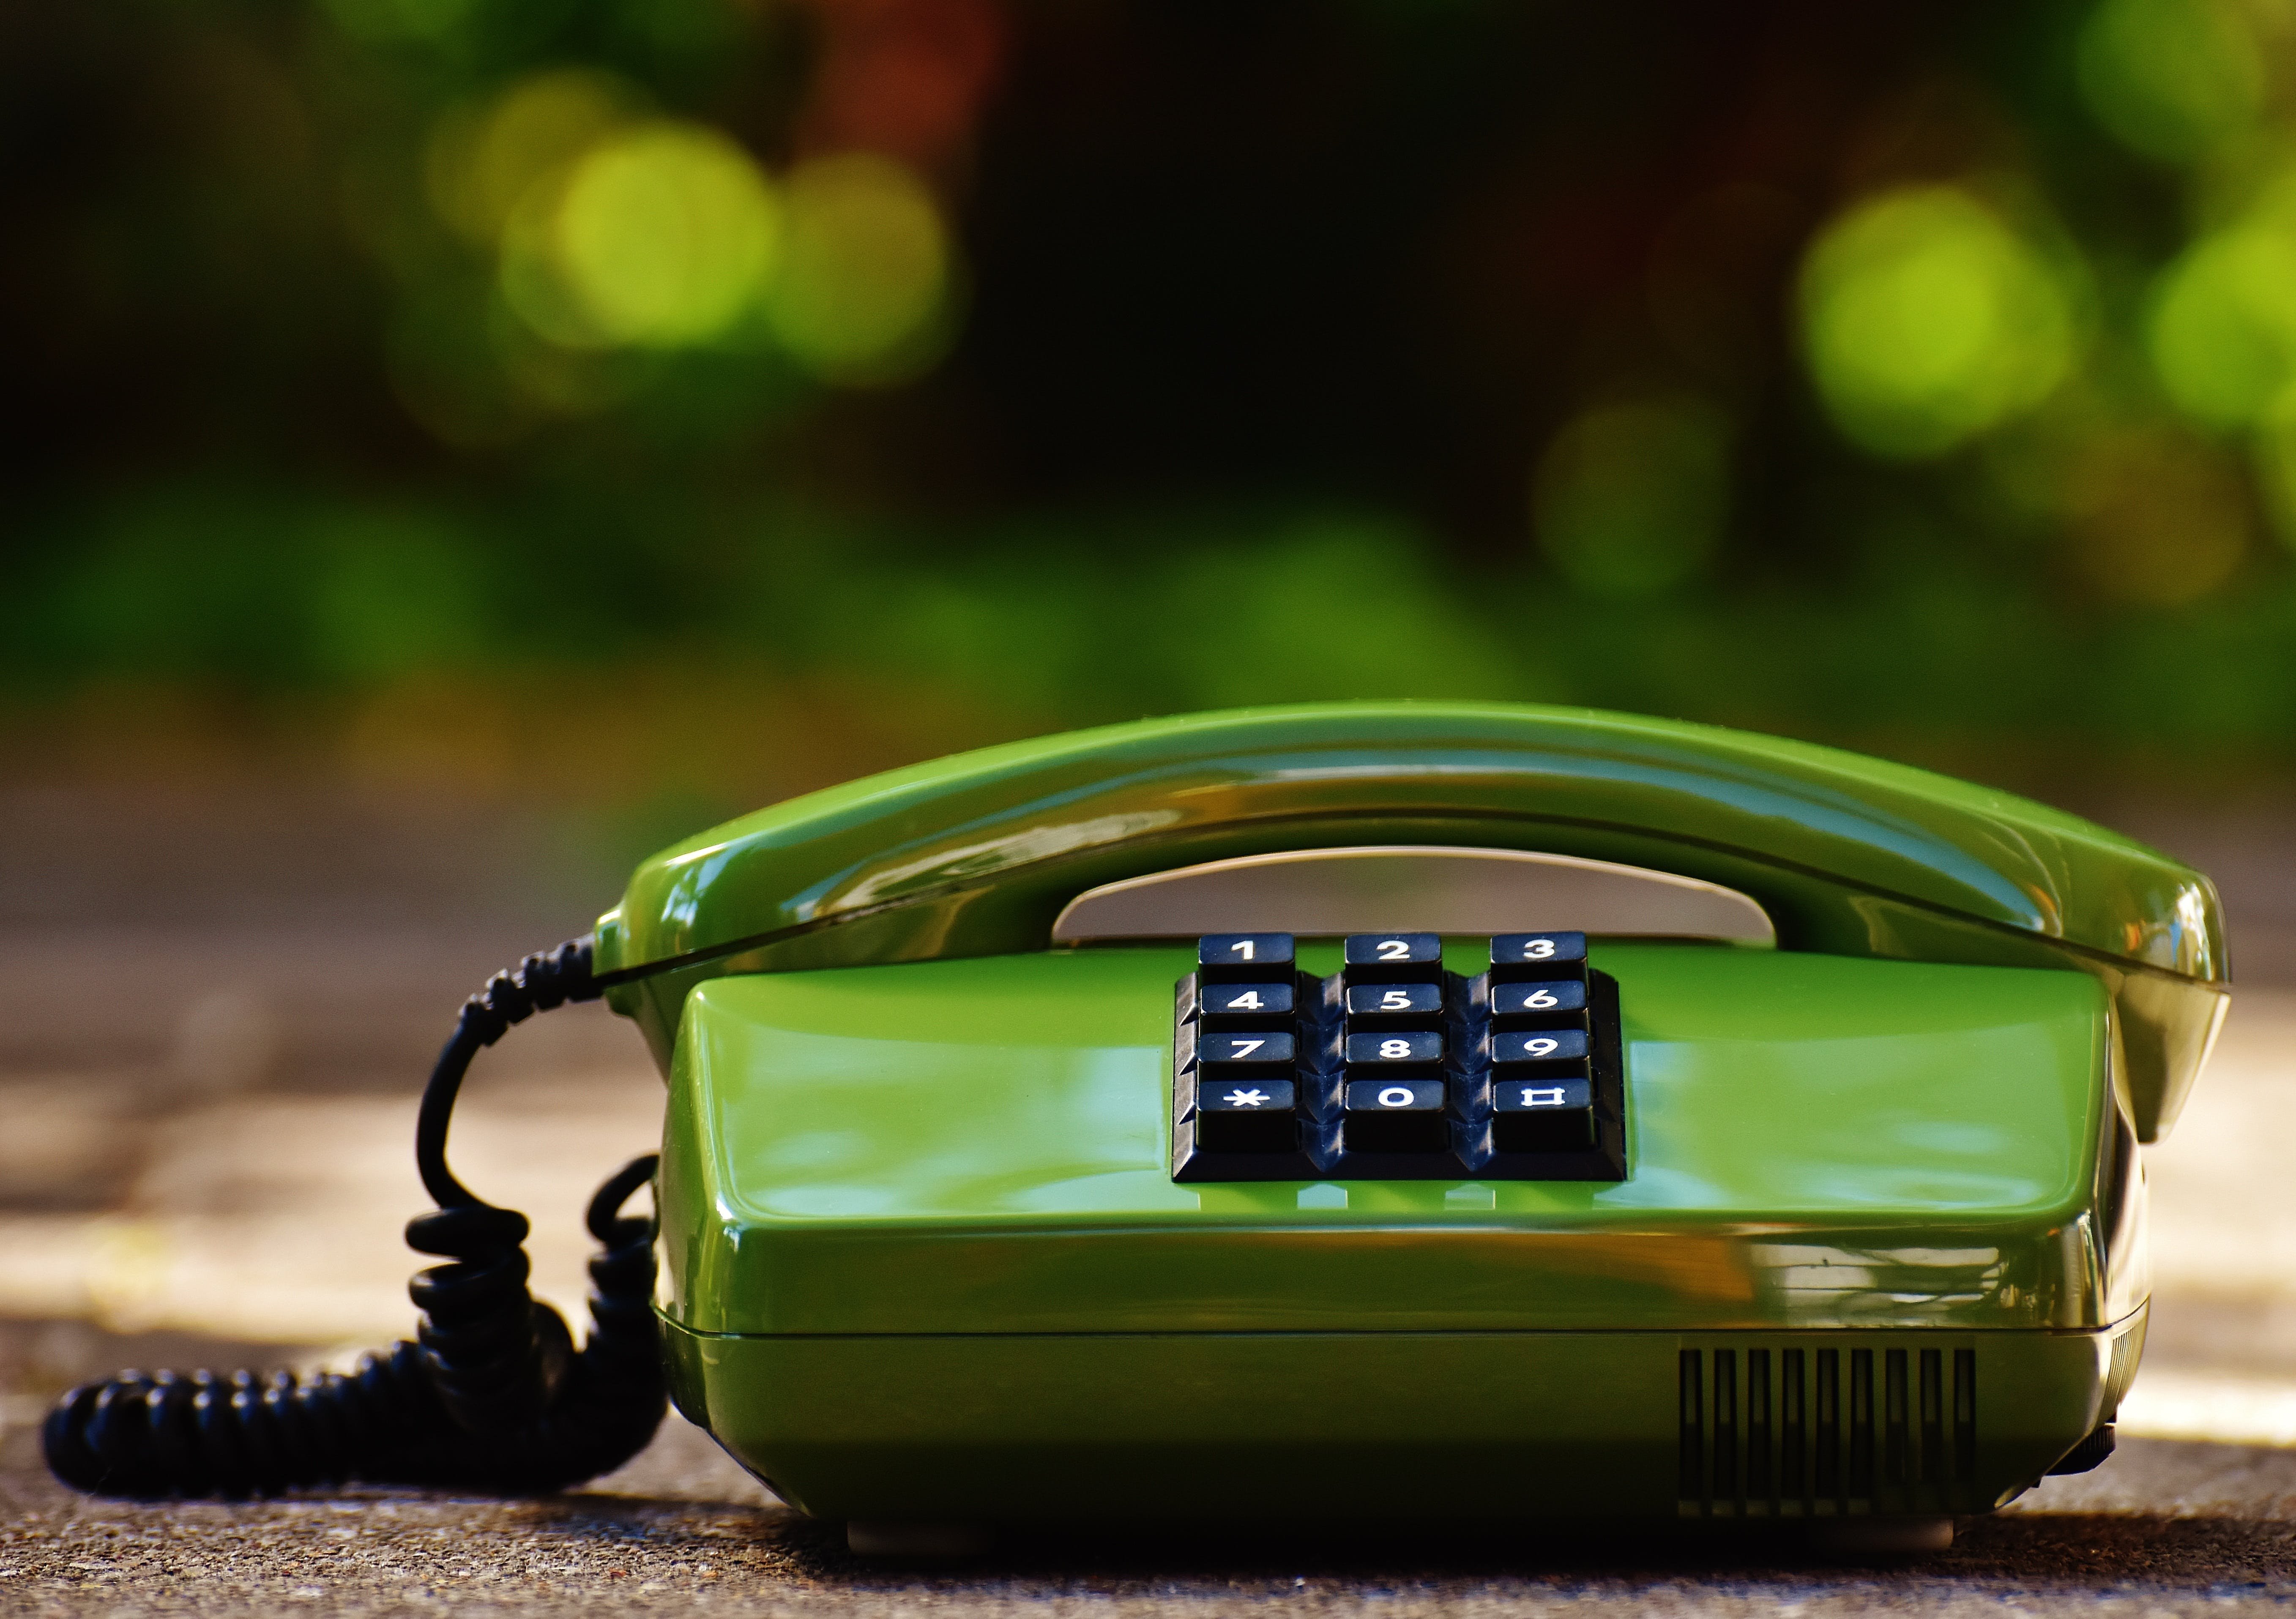 Зеленый телефон в вк. Зеленый телефон. Телефонная трубка. Зеленая телефонная трубка. Теслафон.